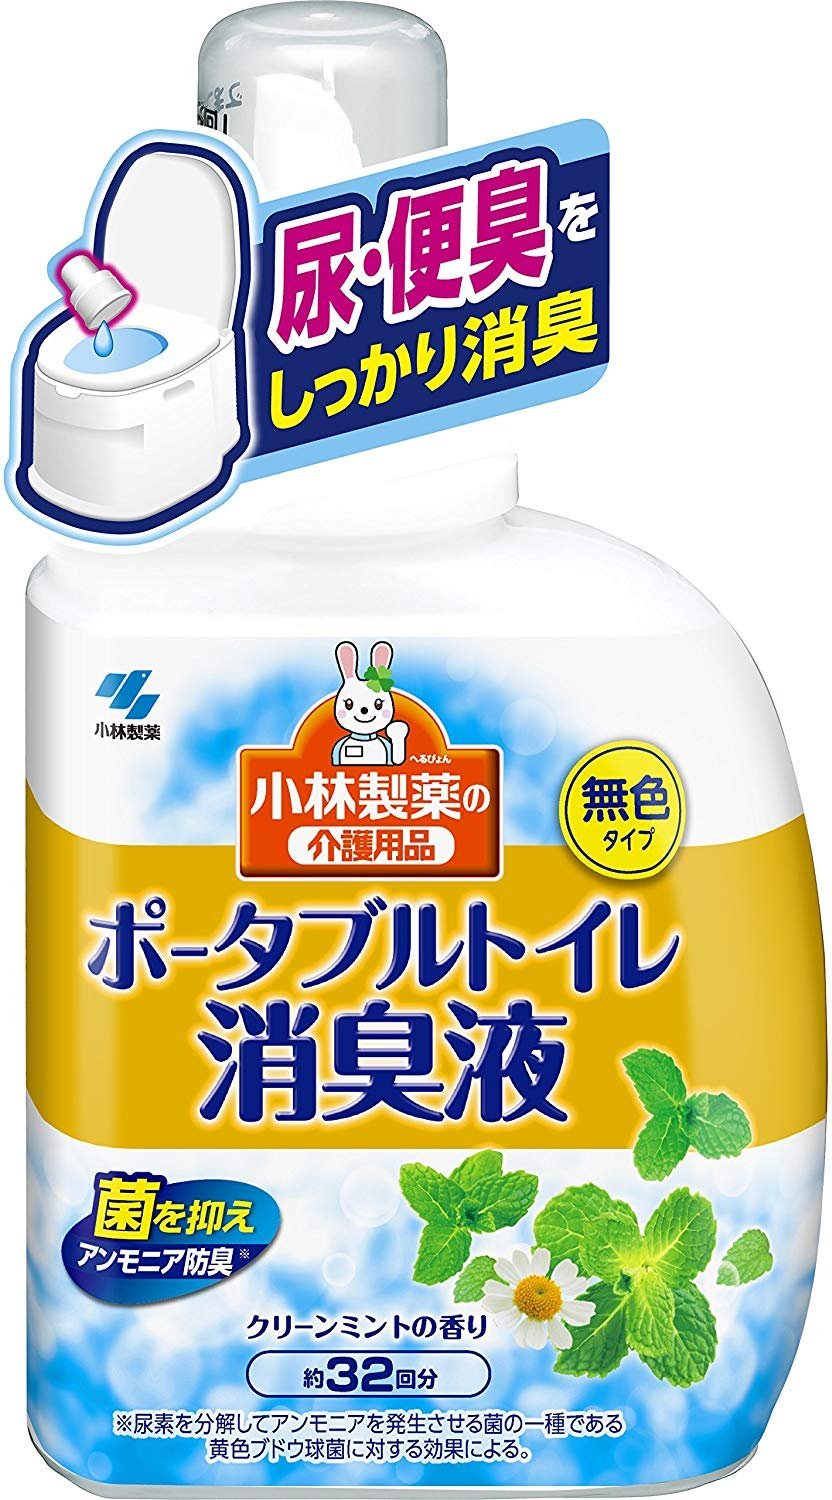 日本【小林製藥】輕便馬桶消臭液 薄荷香400ml